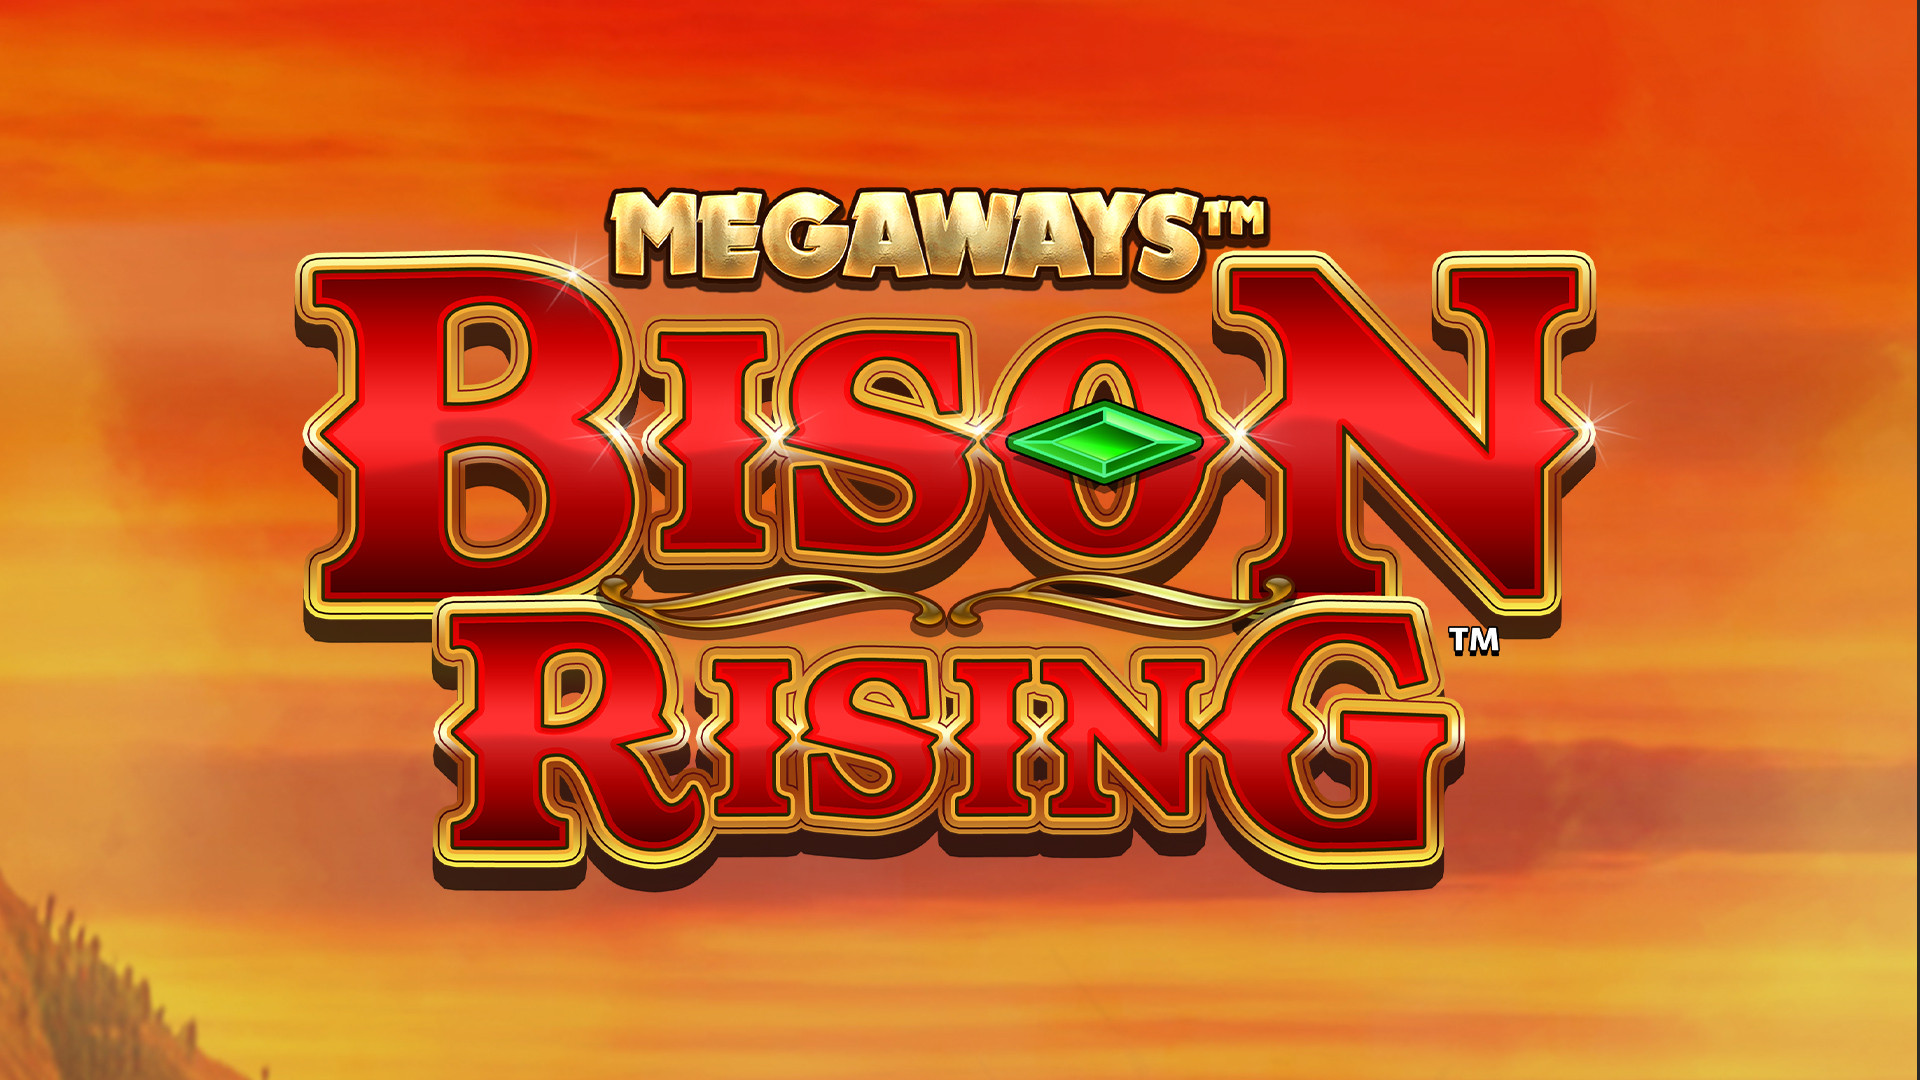 Bison Rising MEGAWAYS